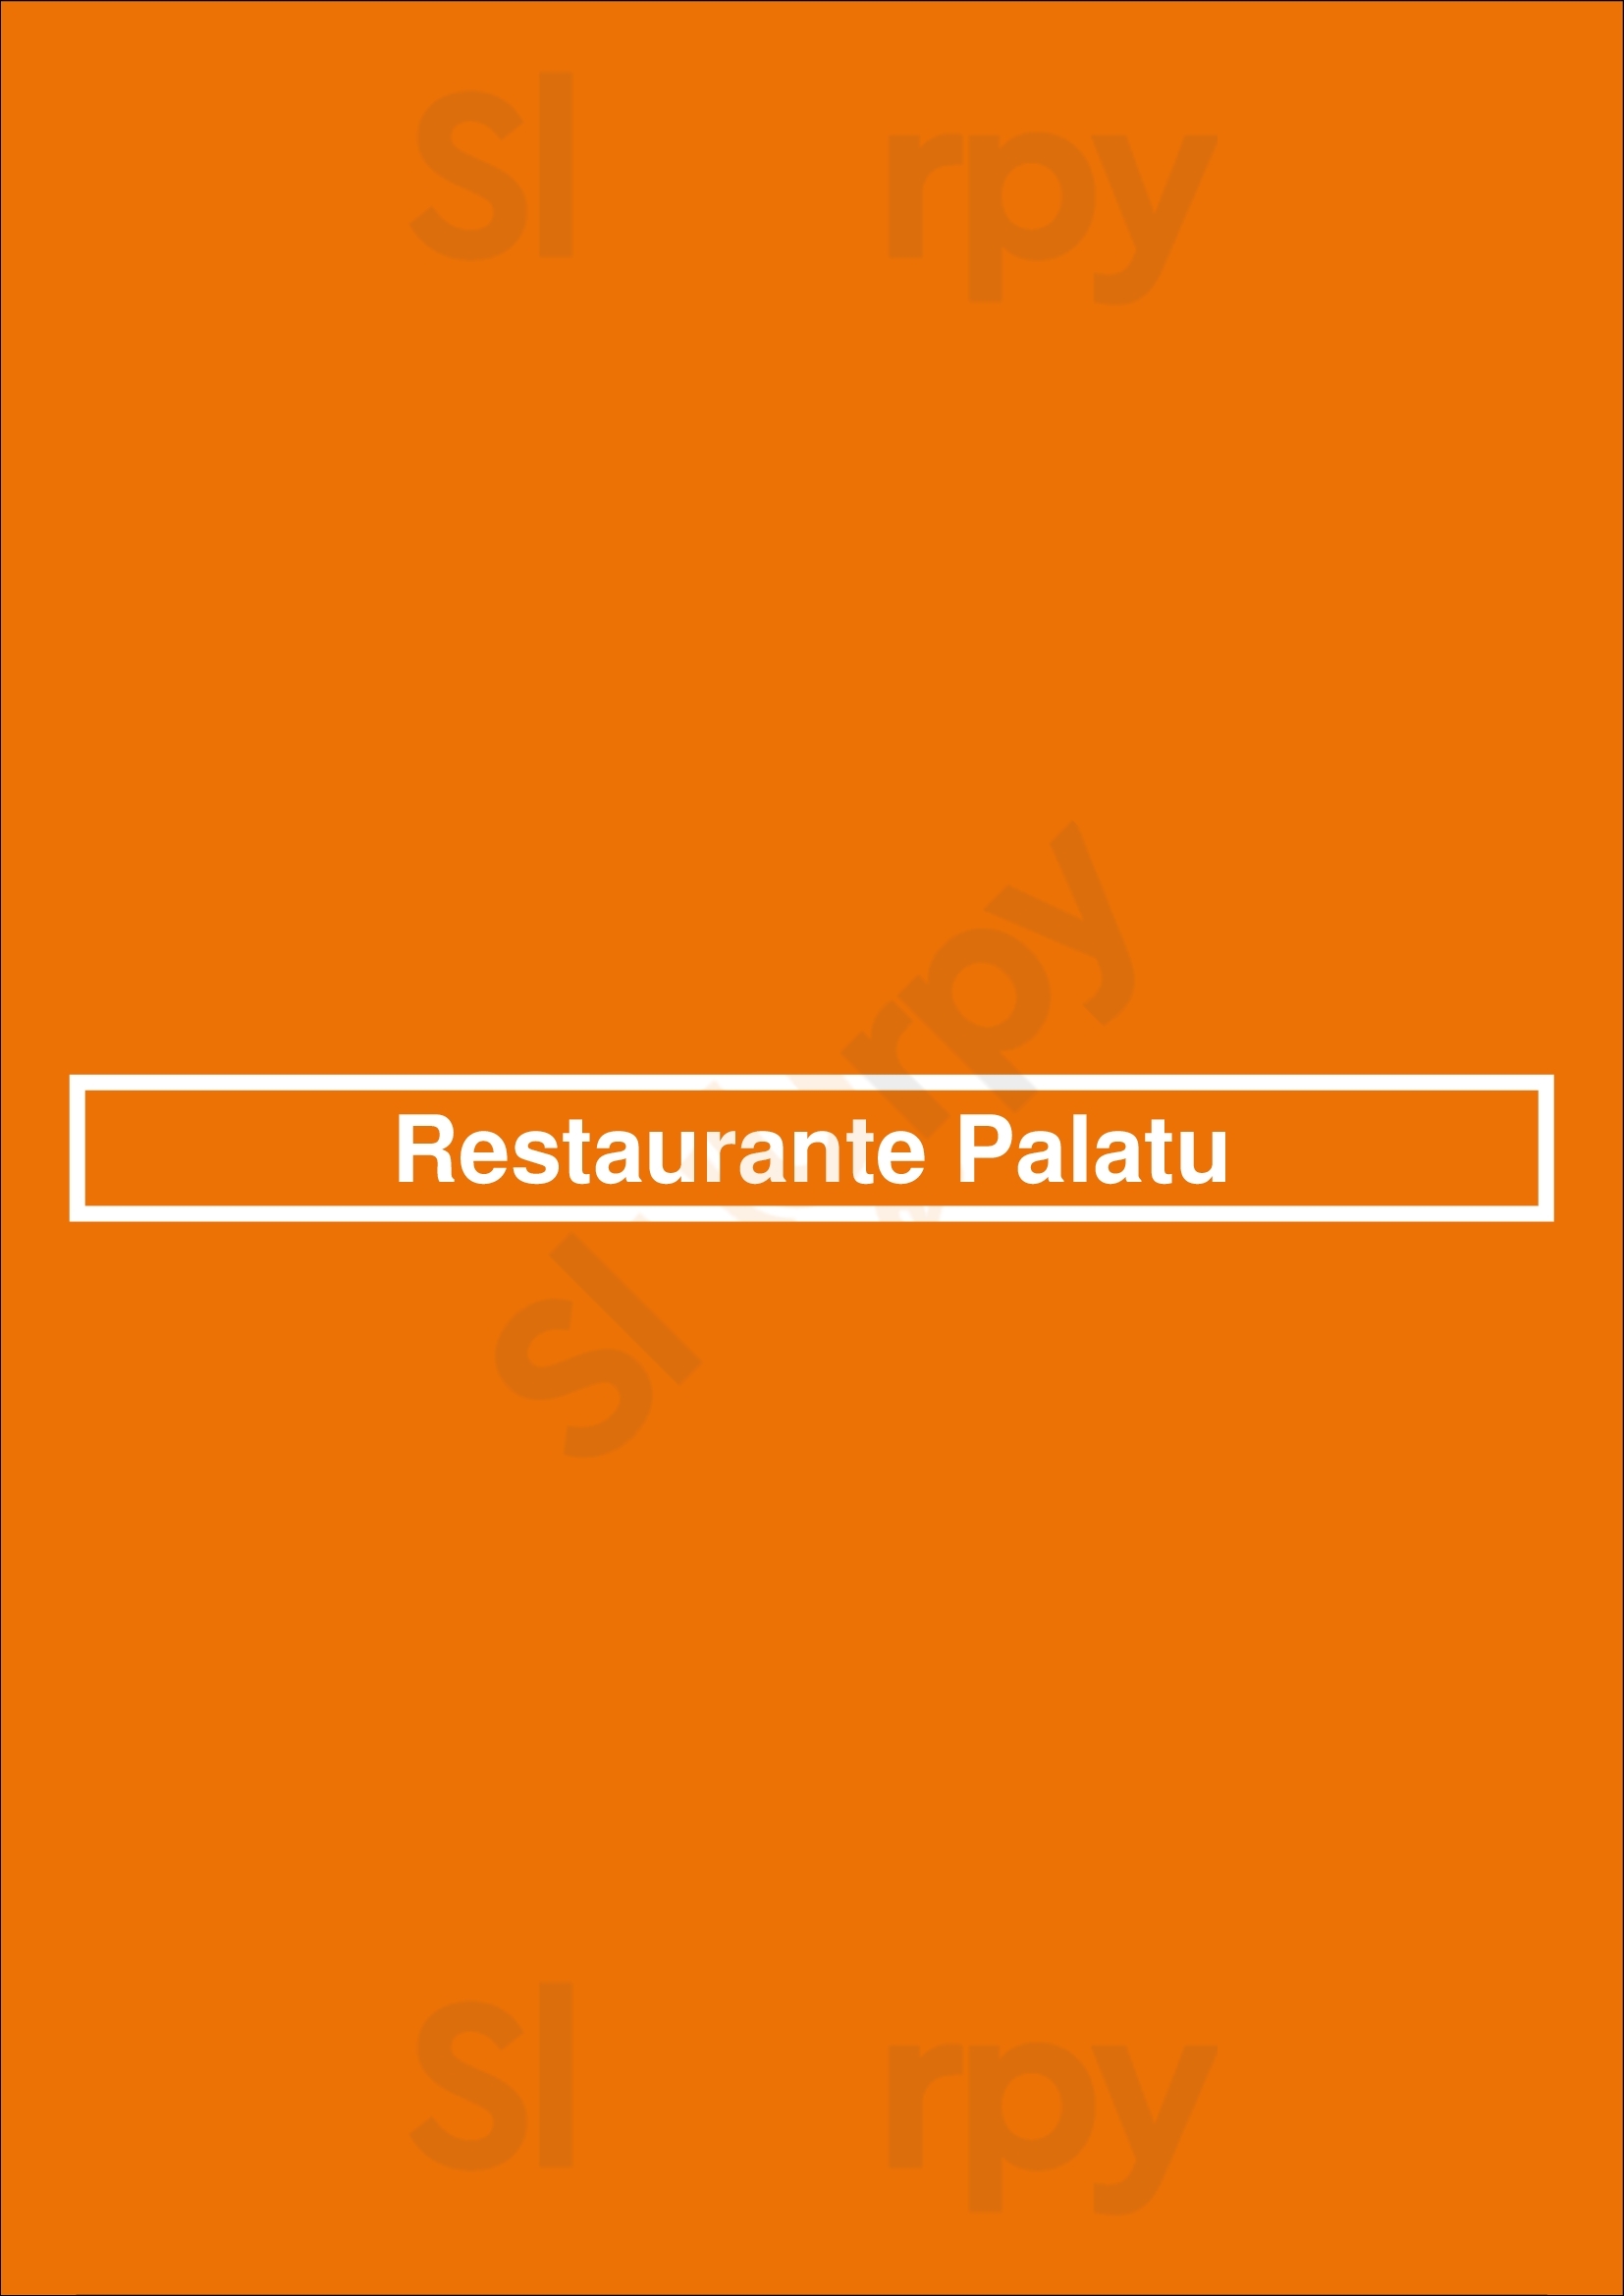 Restaurante Palatu Braga Menu - 1